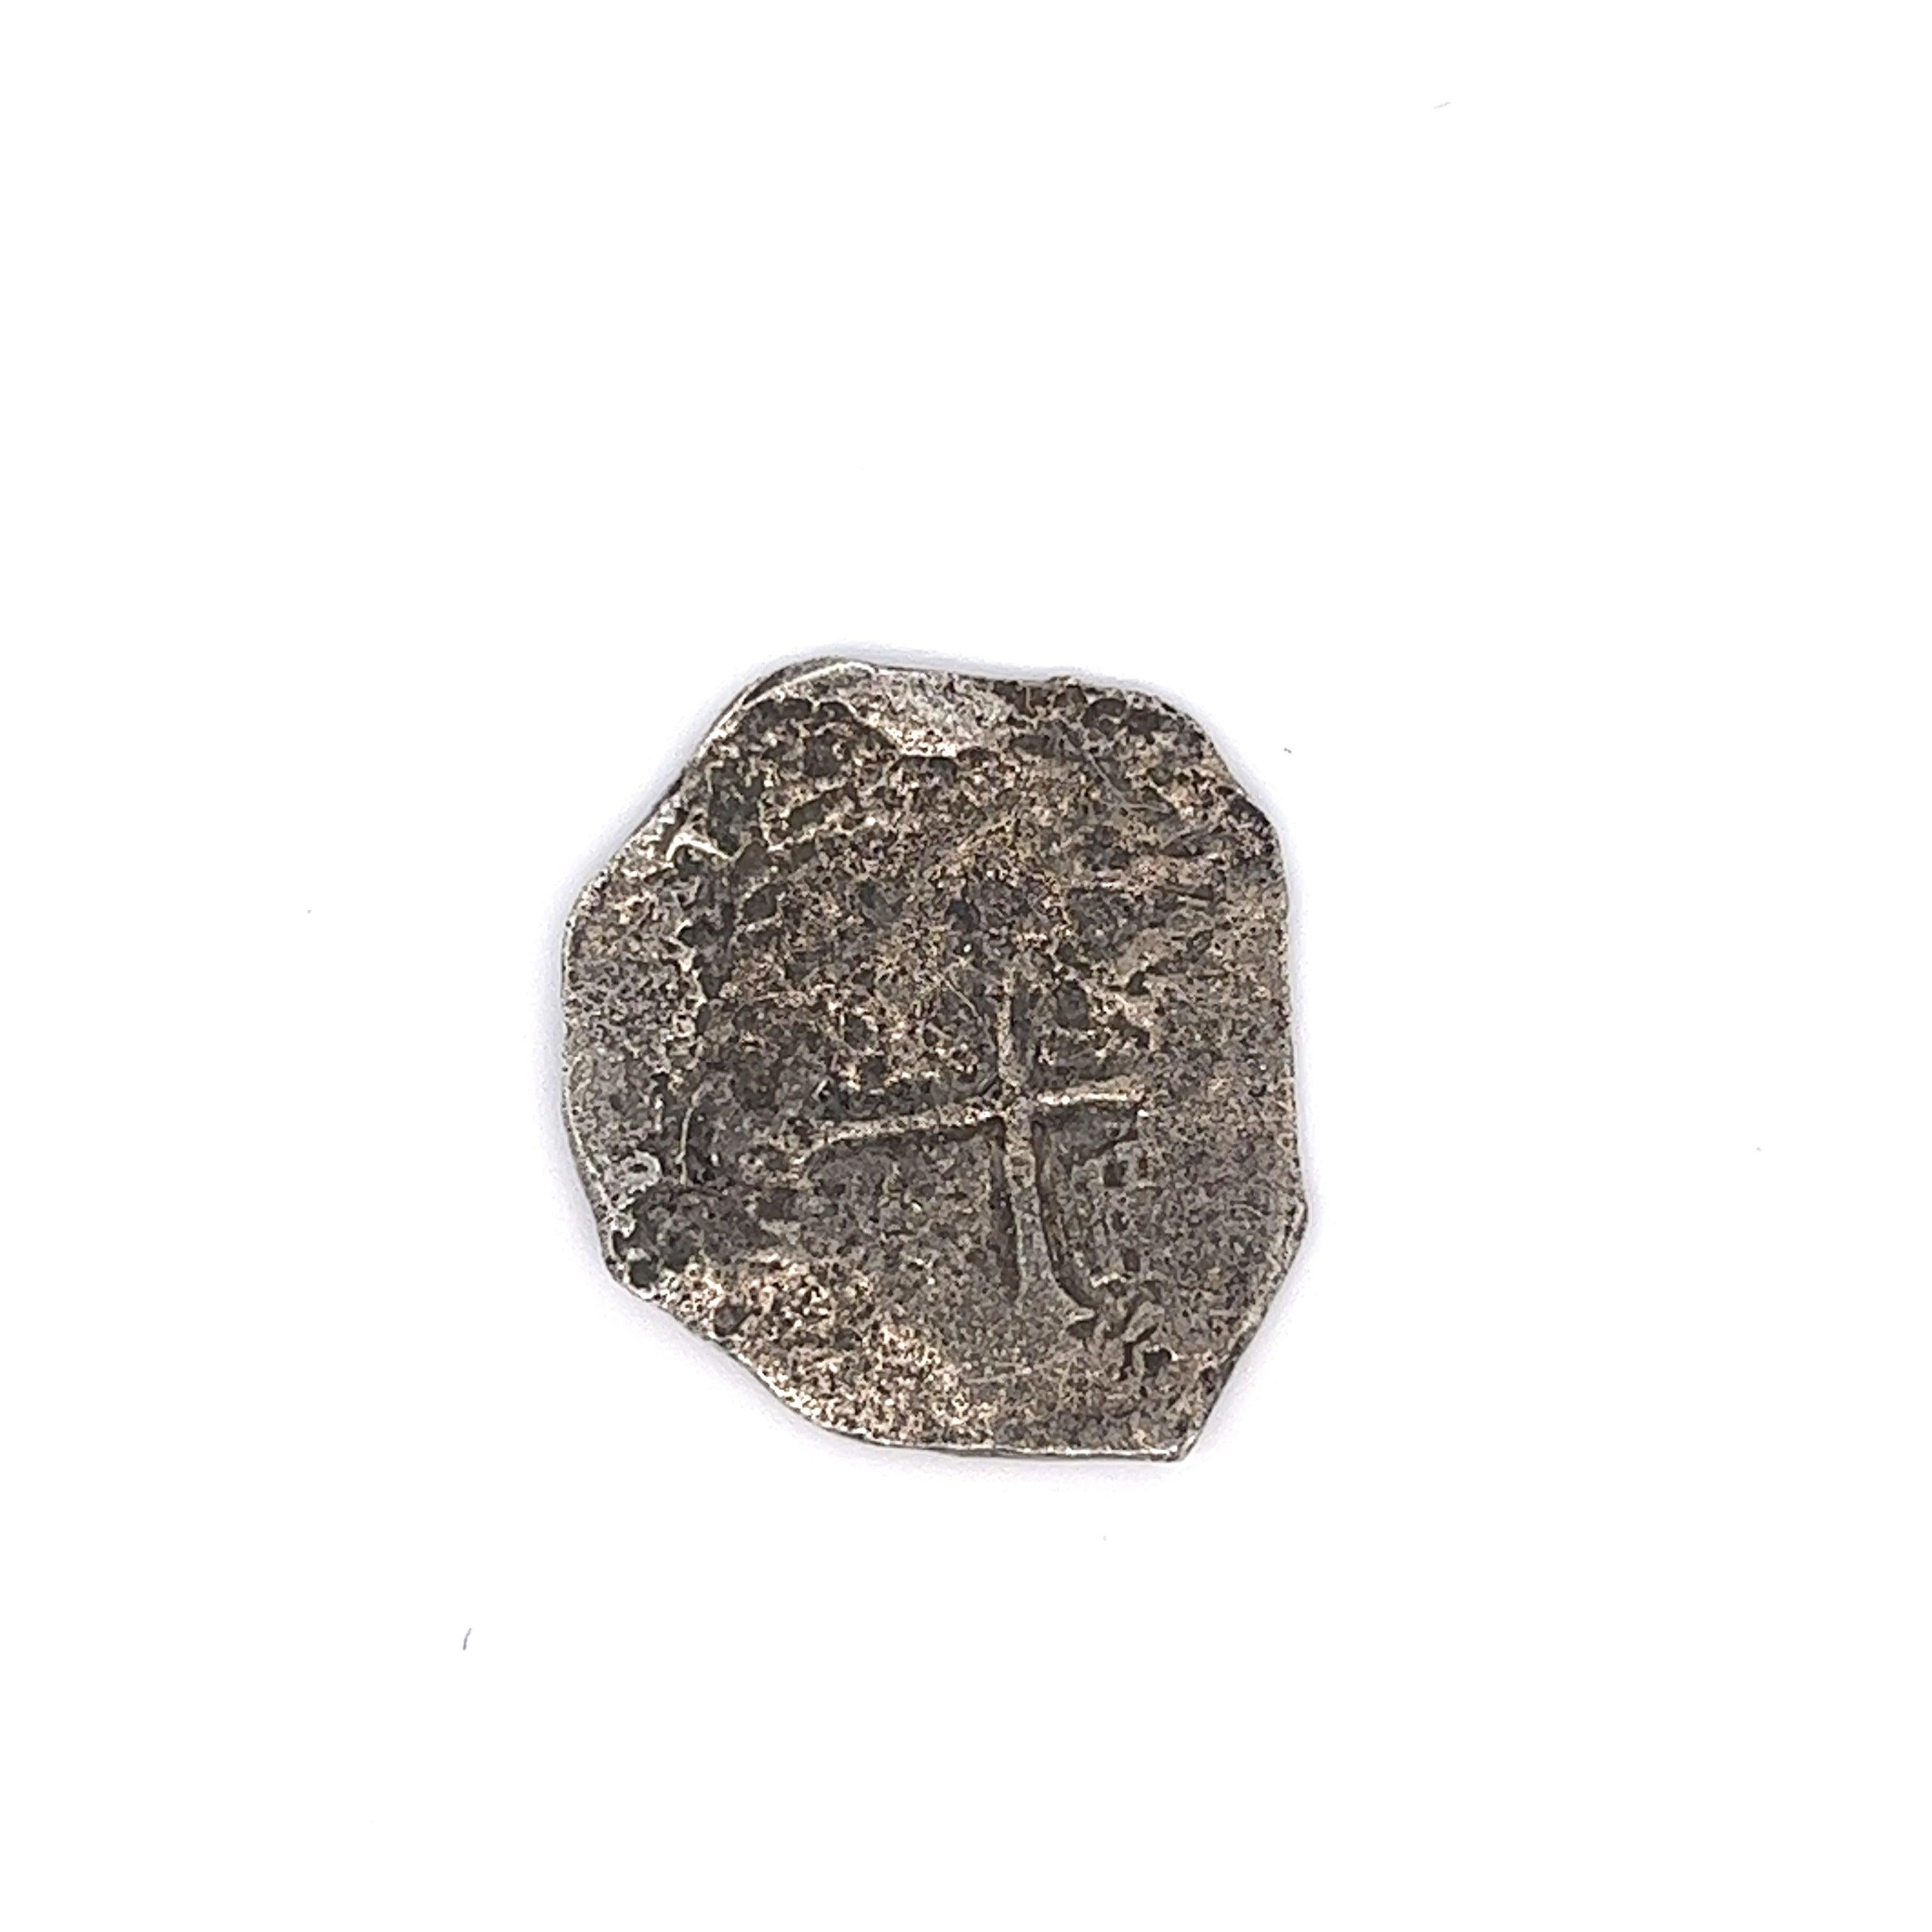 Original Atocha Münze 4 Reale Grade 2 Mexico Mint Unmontiert #85A-159726. Komplett mit dem originalen, von Mel Fisher unterzeichneten Zertifikat von Treasure Salvors INC. 

4-Reale-Stückelung wird immer seltener: Die meisten Münzen an Bord der